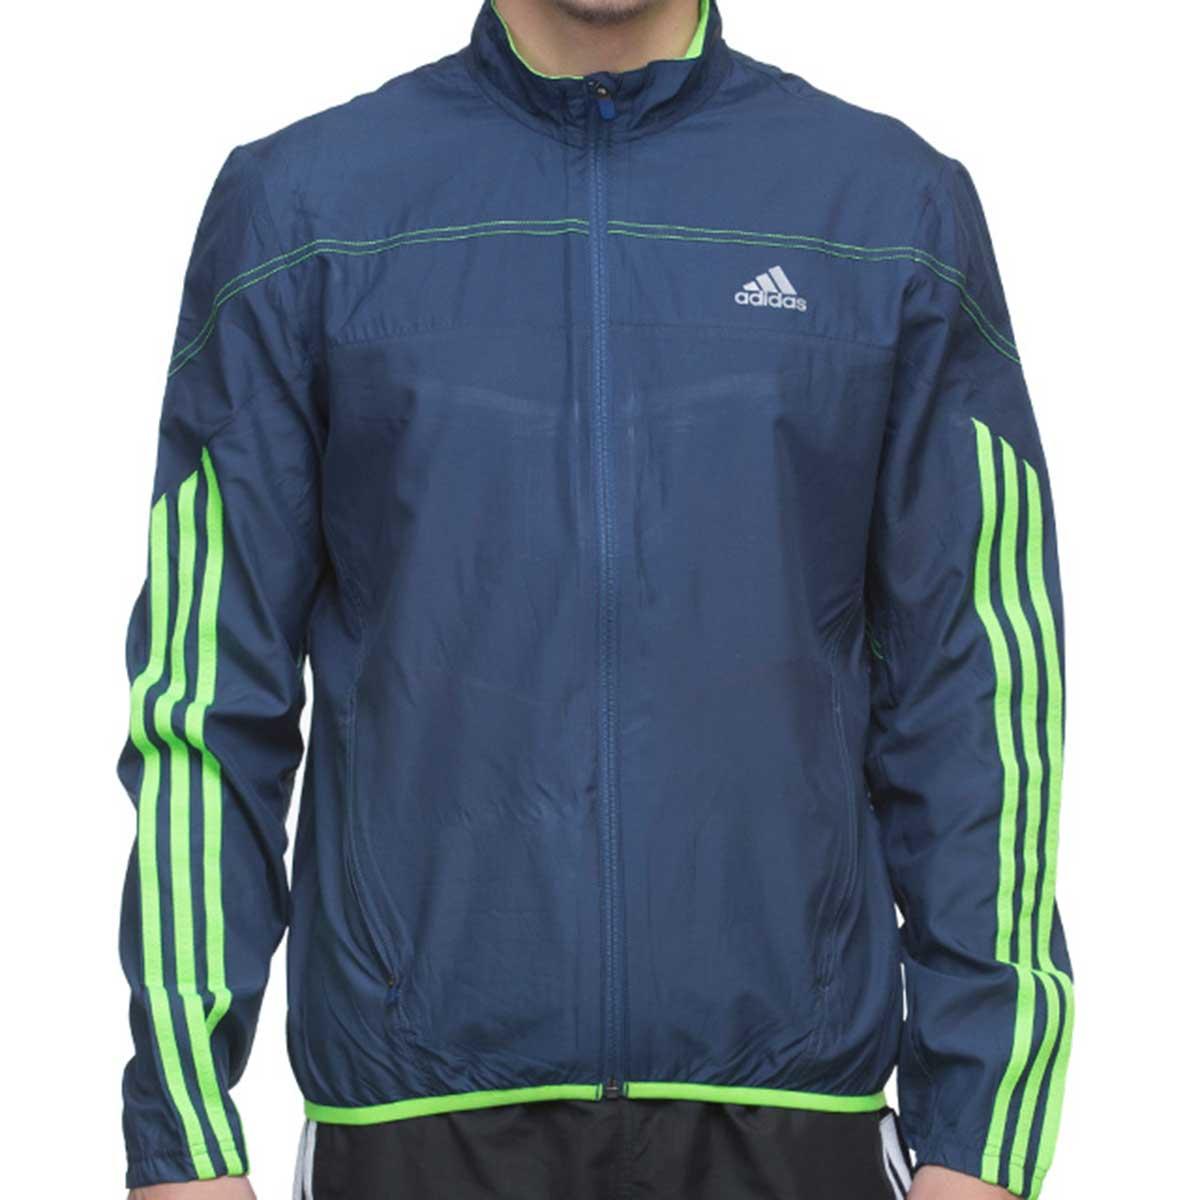 Buy Adidas Running Response Jacket Online India| Adidas Jackets & Clothing Online